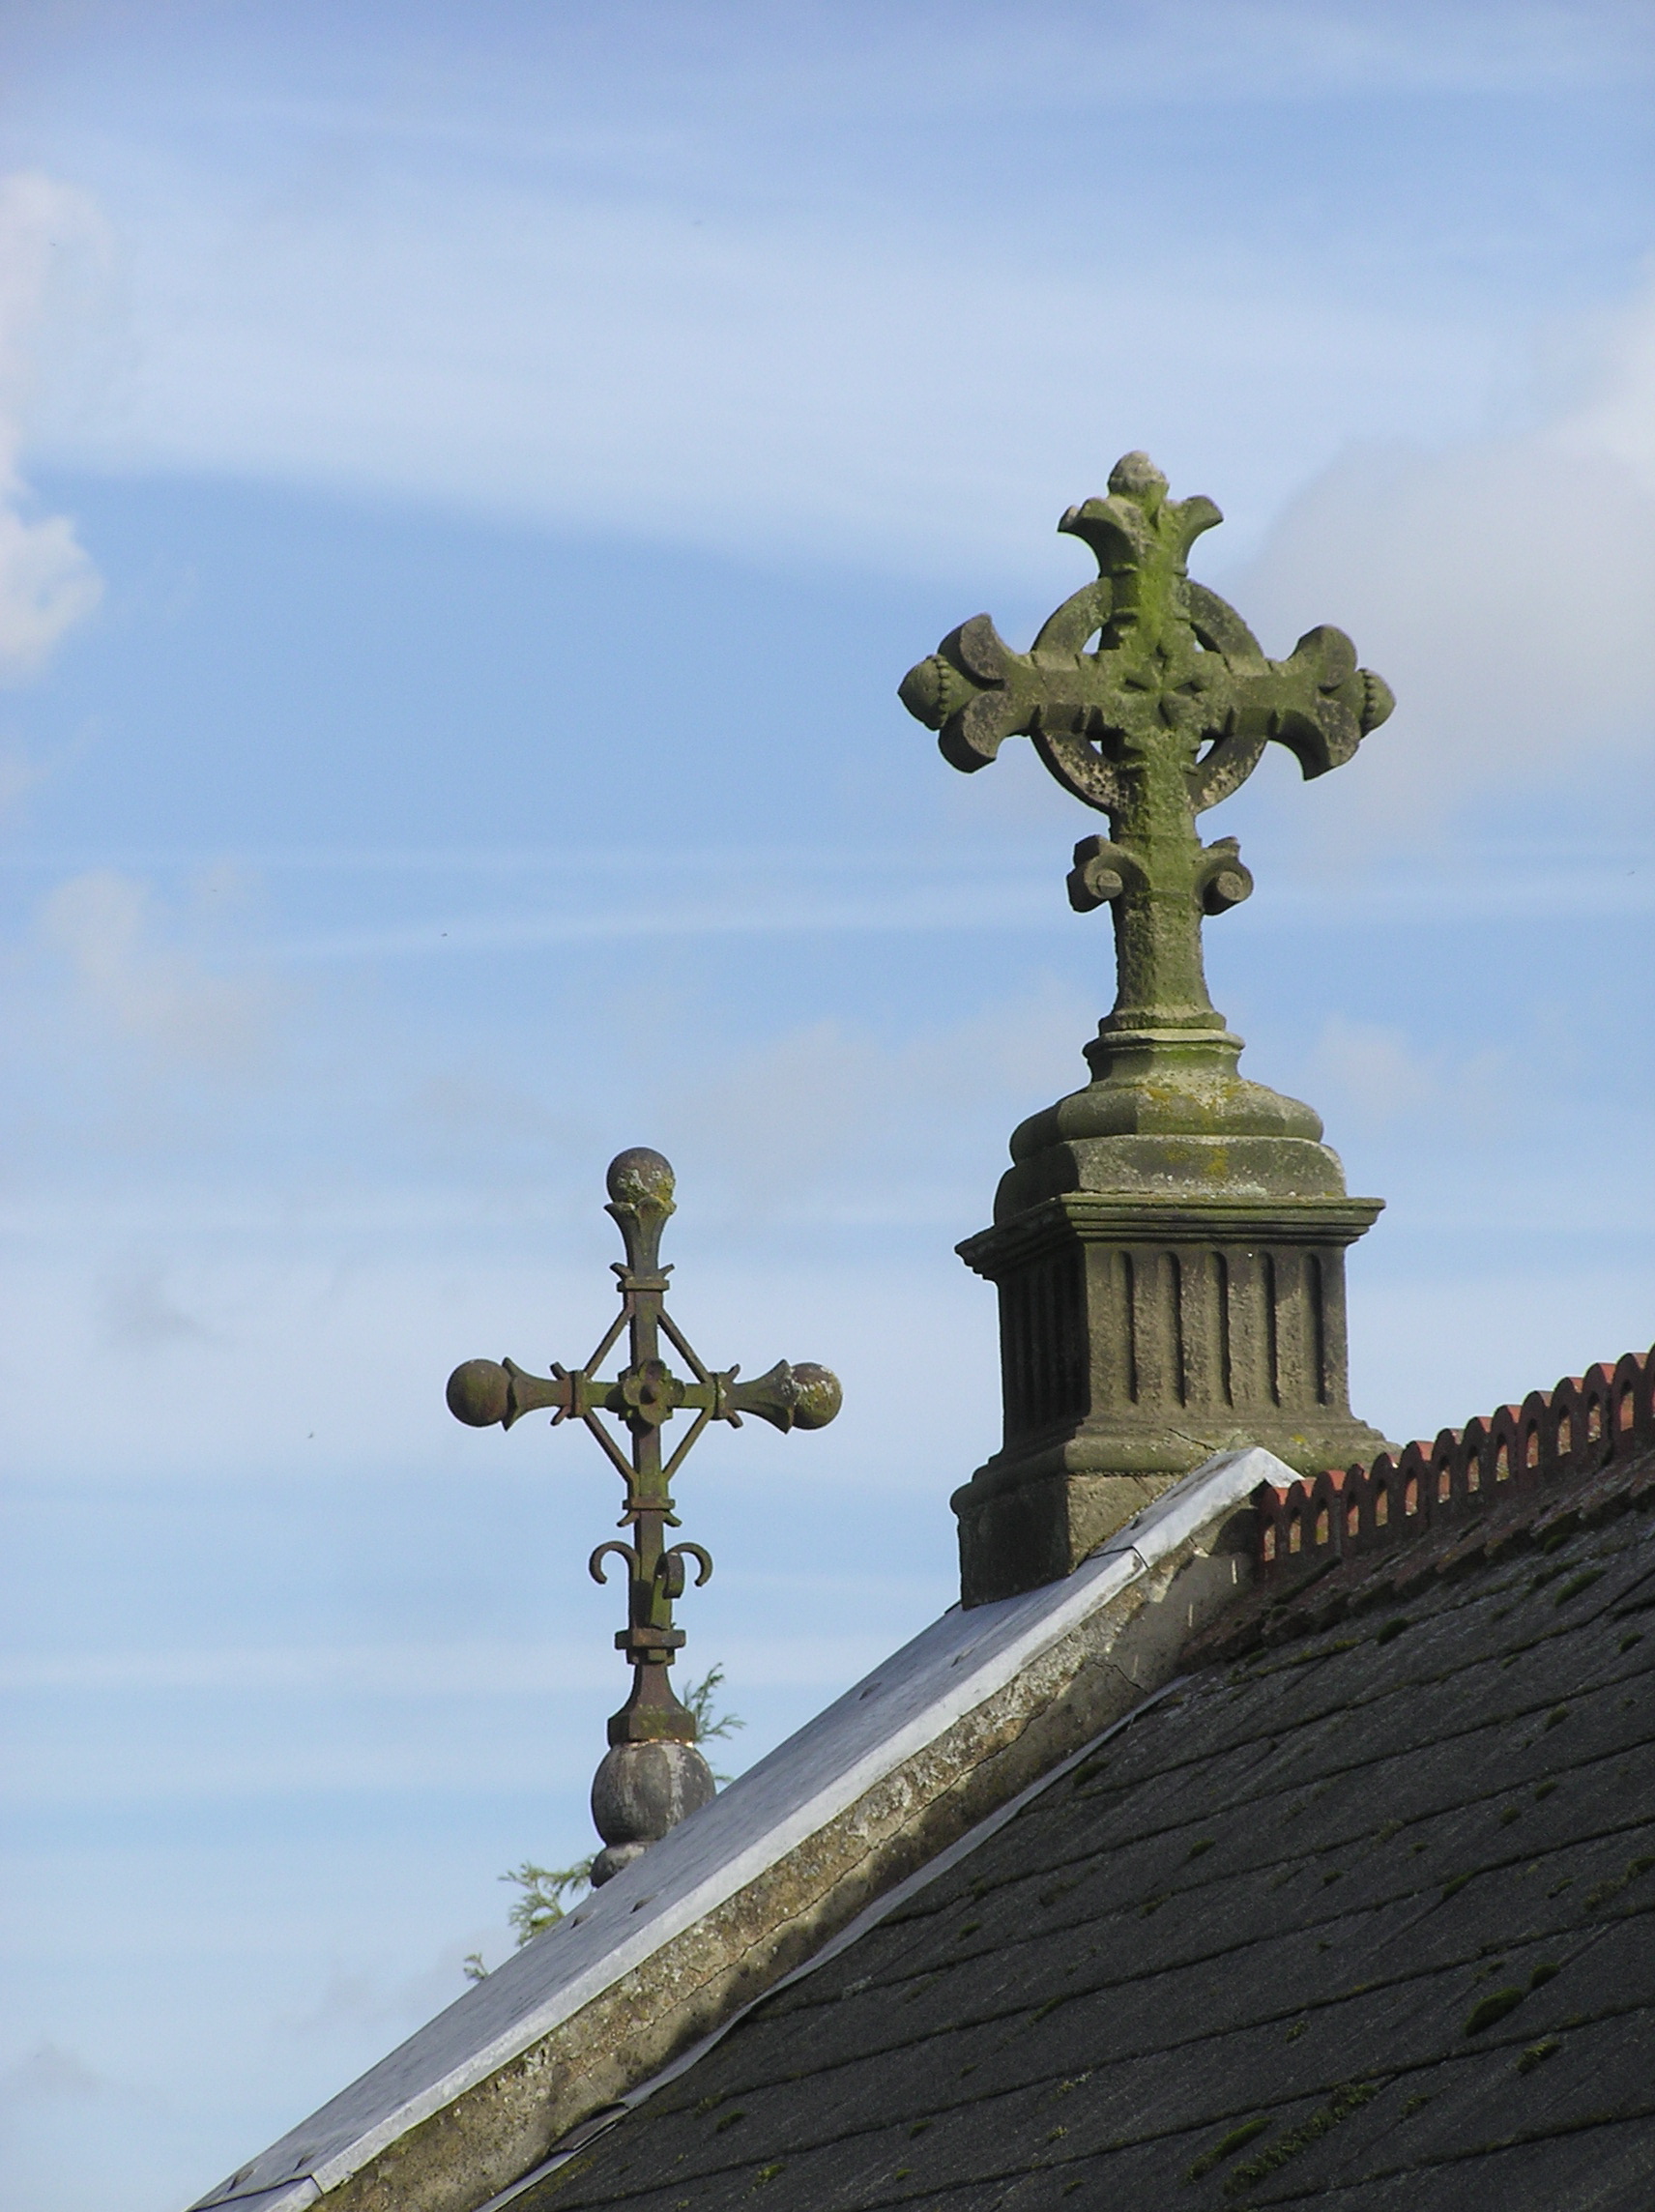 Crosses on rooftop - (c) Christine Sine